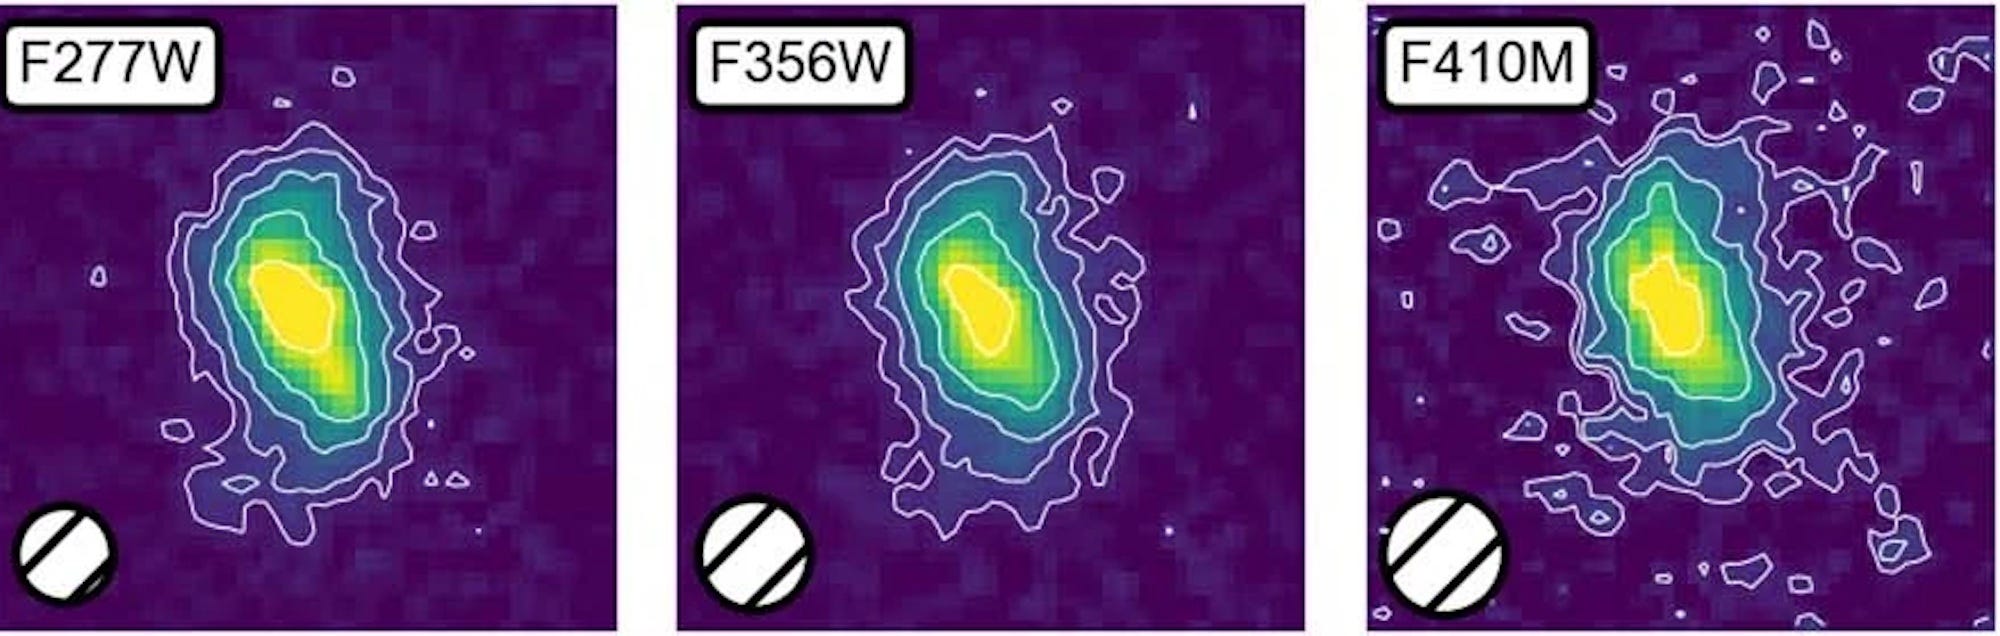 Drei Aufnahmen der Galaxie Ceers-2112 werden nebeneinander gezeigt.  Diese erscheinen als längliche Kleckse in einem Farbverlauf, der von Gelb nach Blau übergeht.